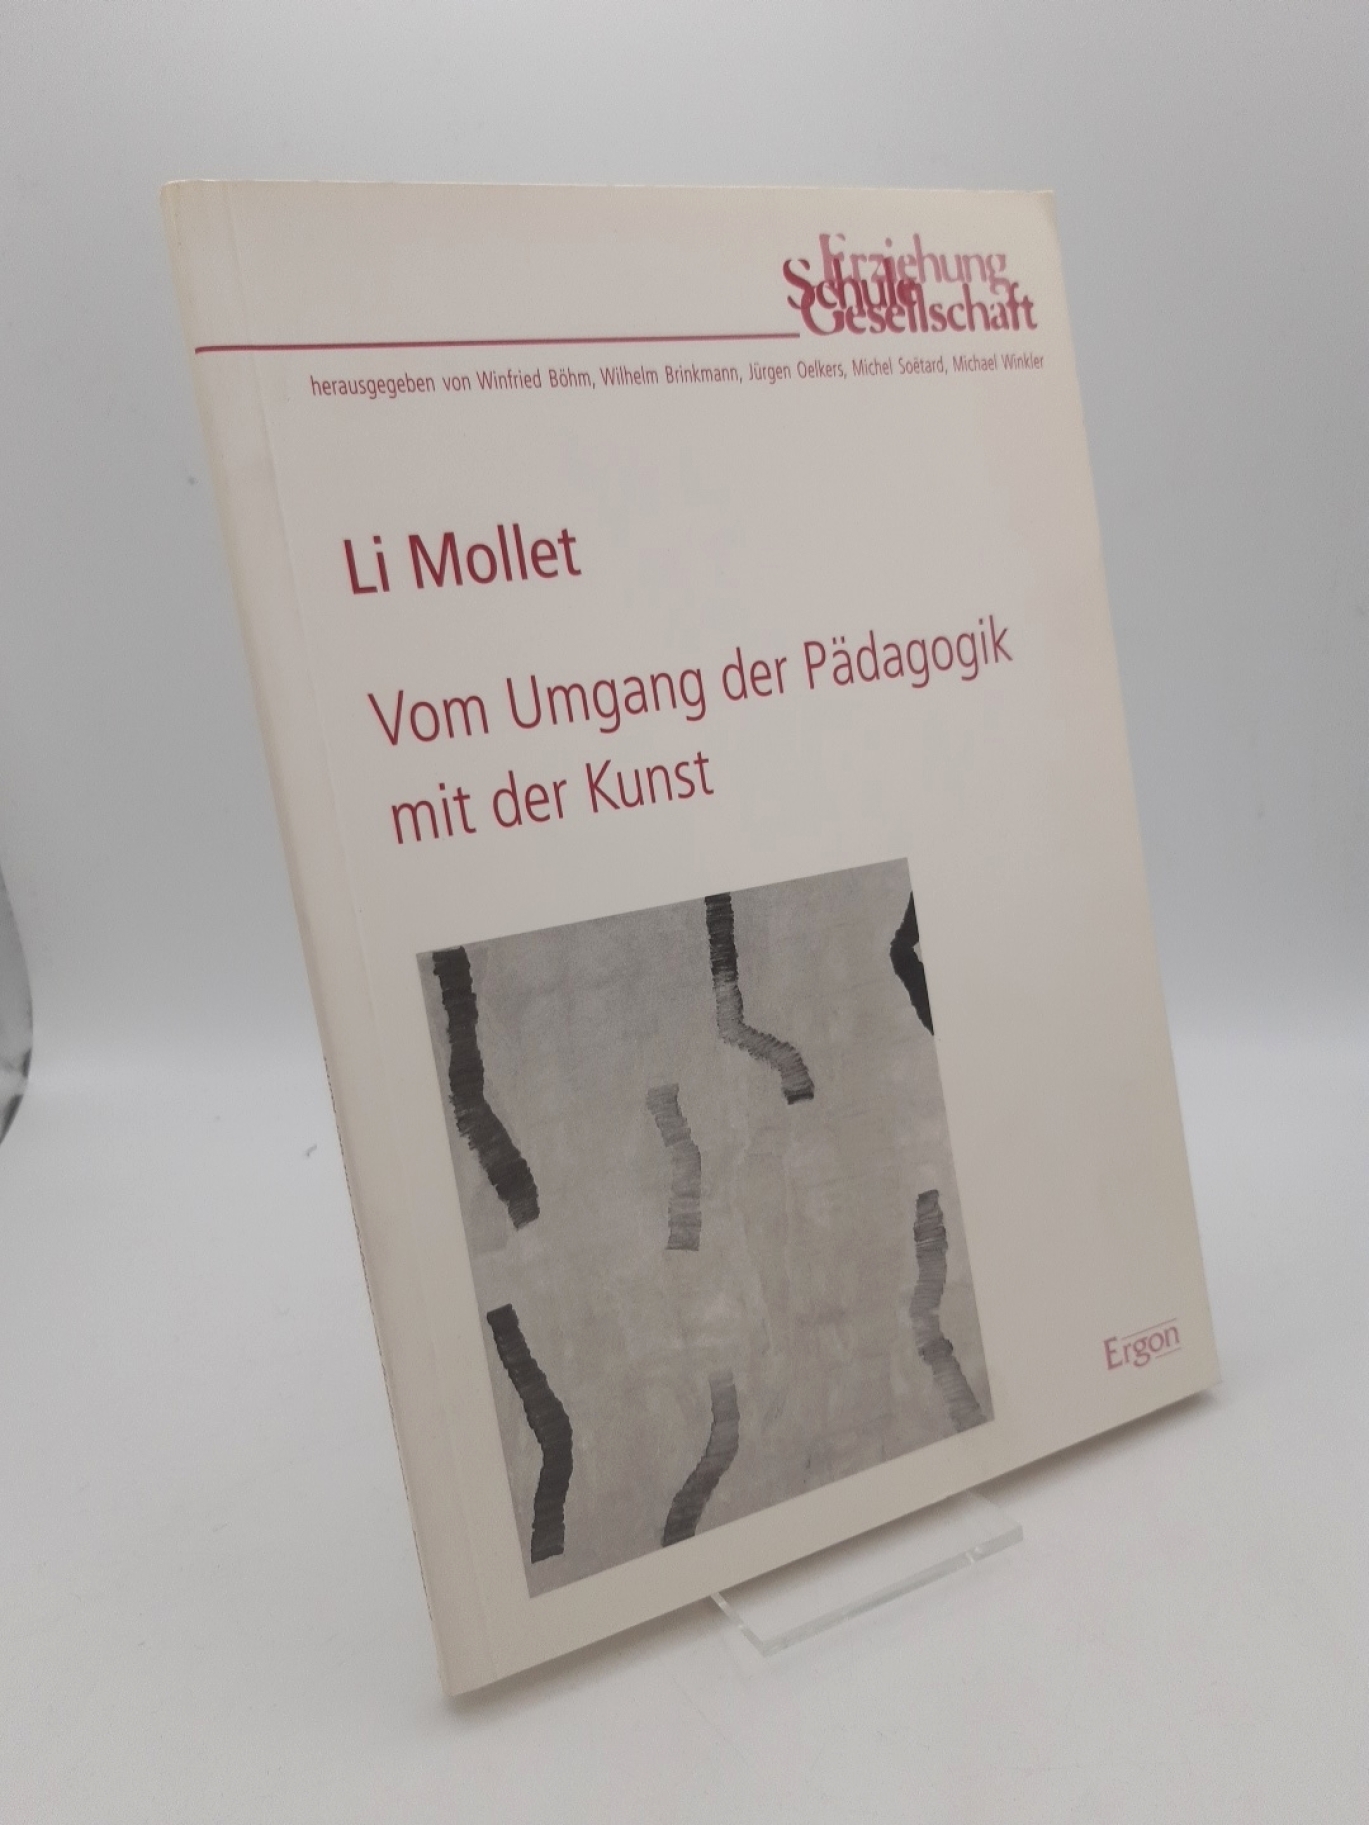 Mollet, Li: Vom Umgang der Pädagogik mit der Kunst / Li Mollet 